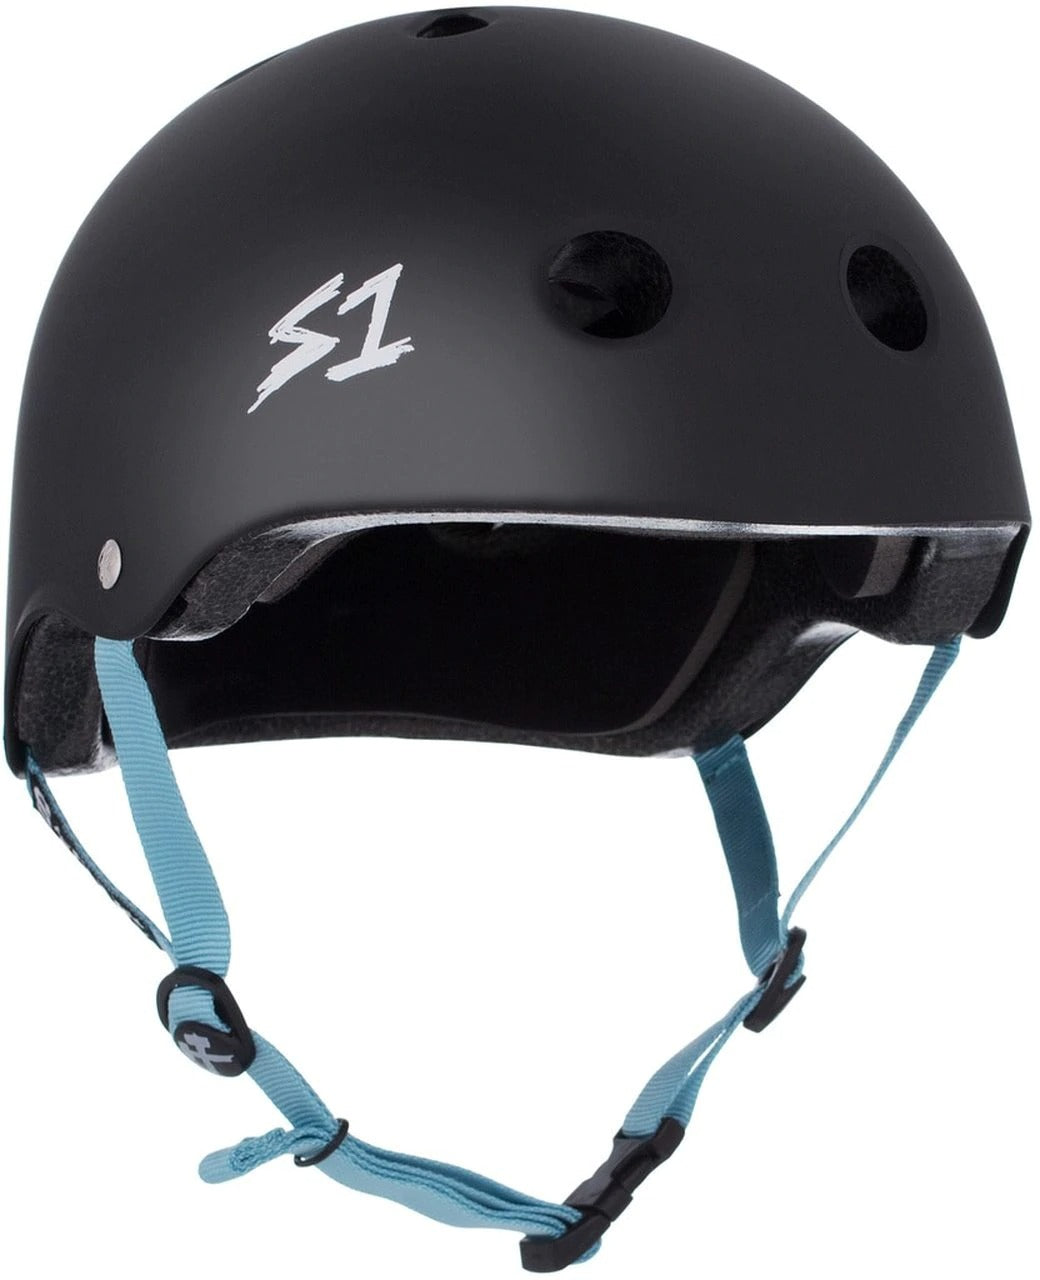 S One Lifer Helmet Skate - Black Matte/Lit